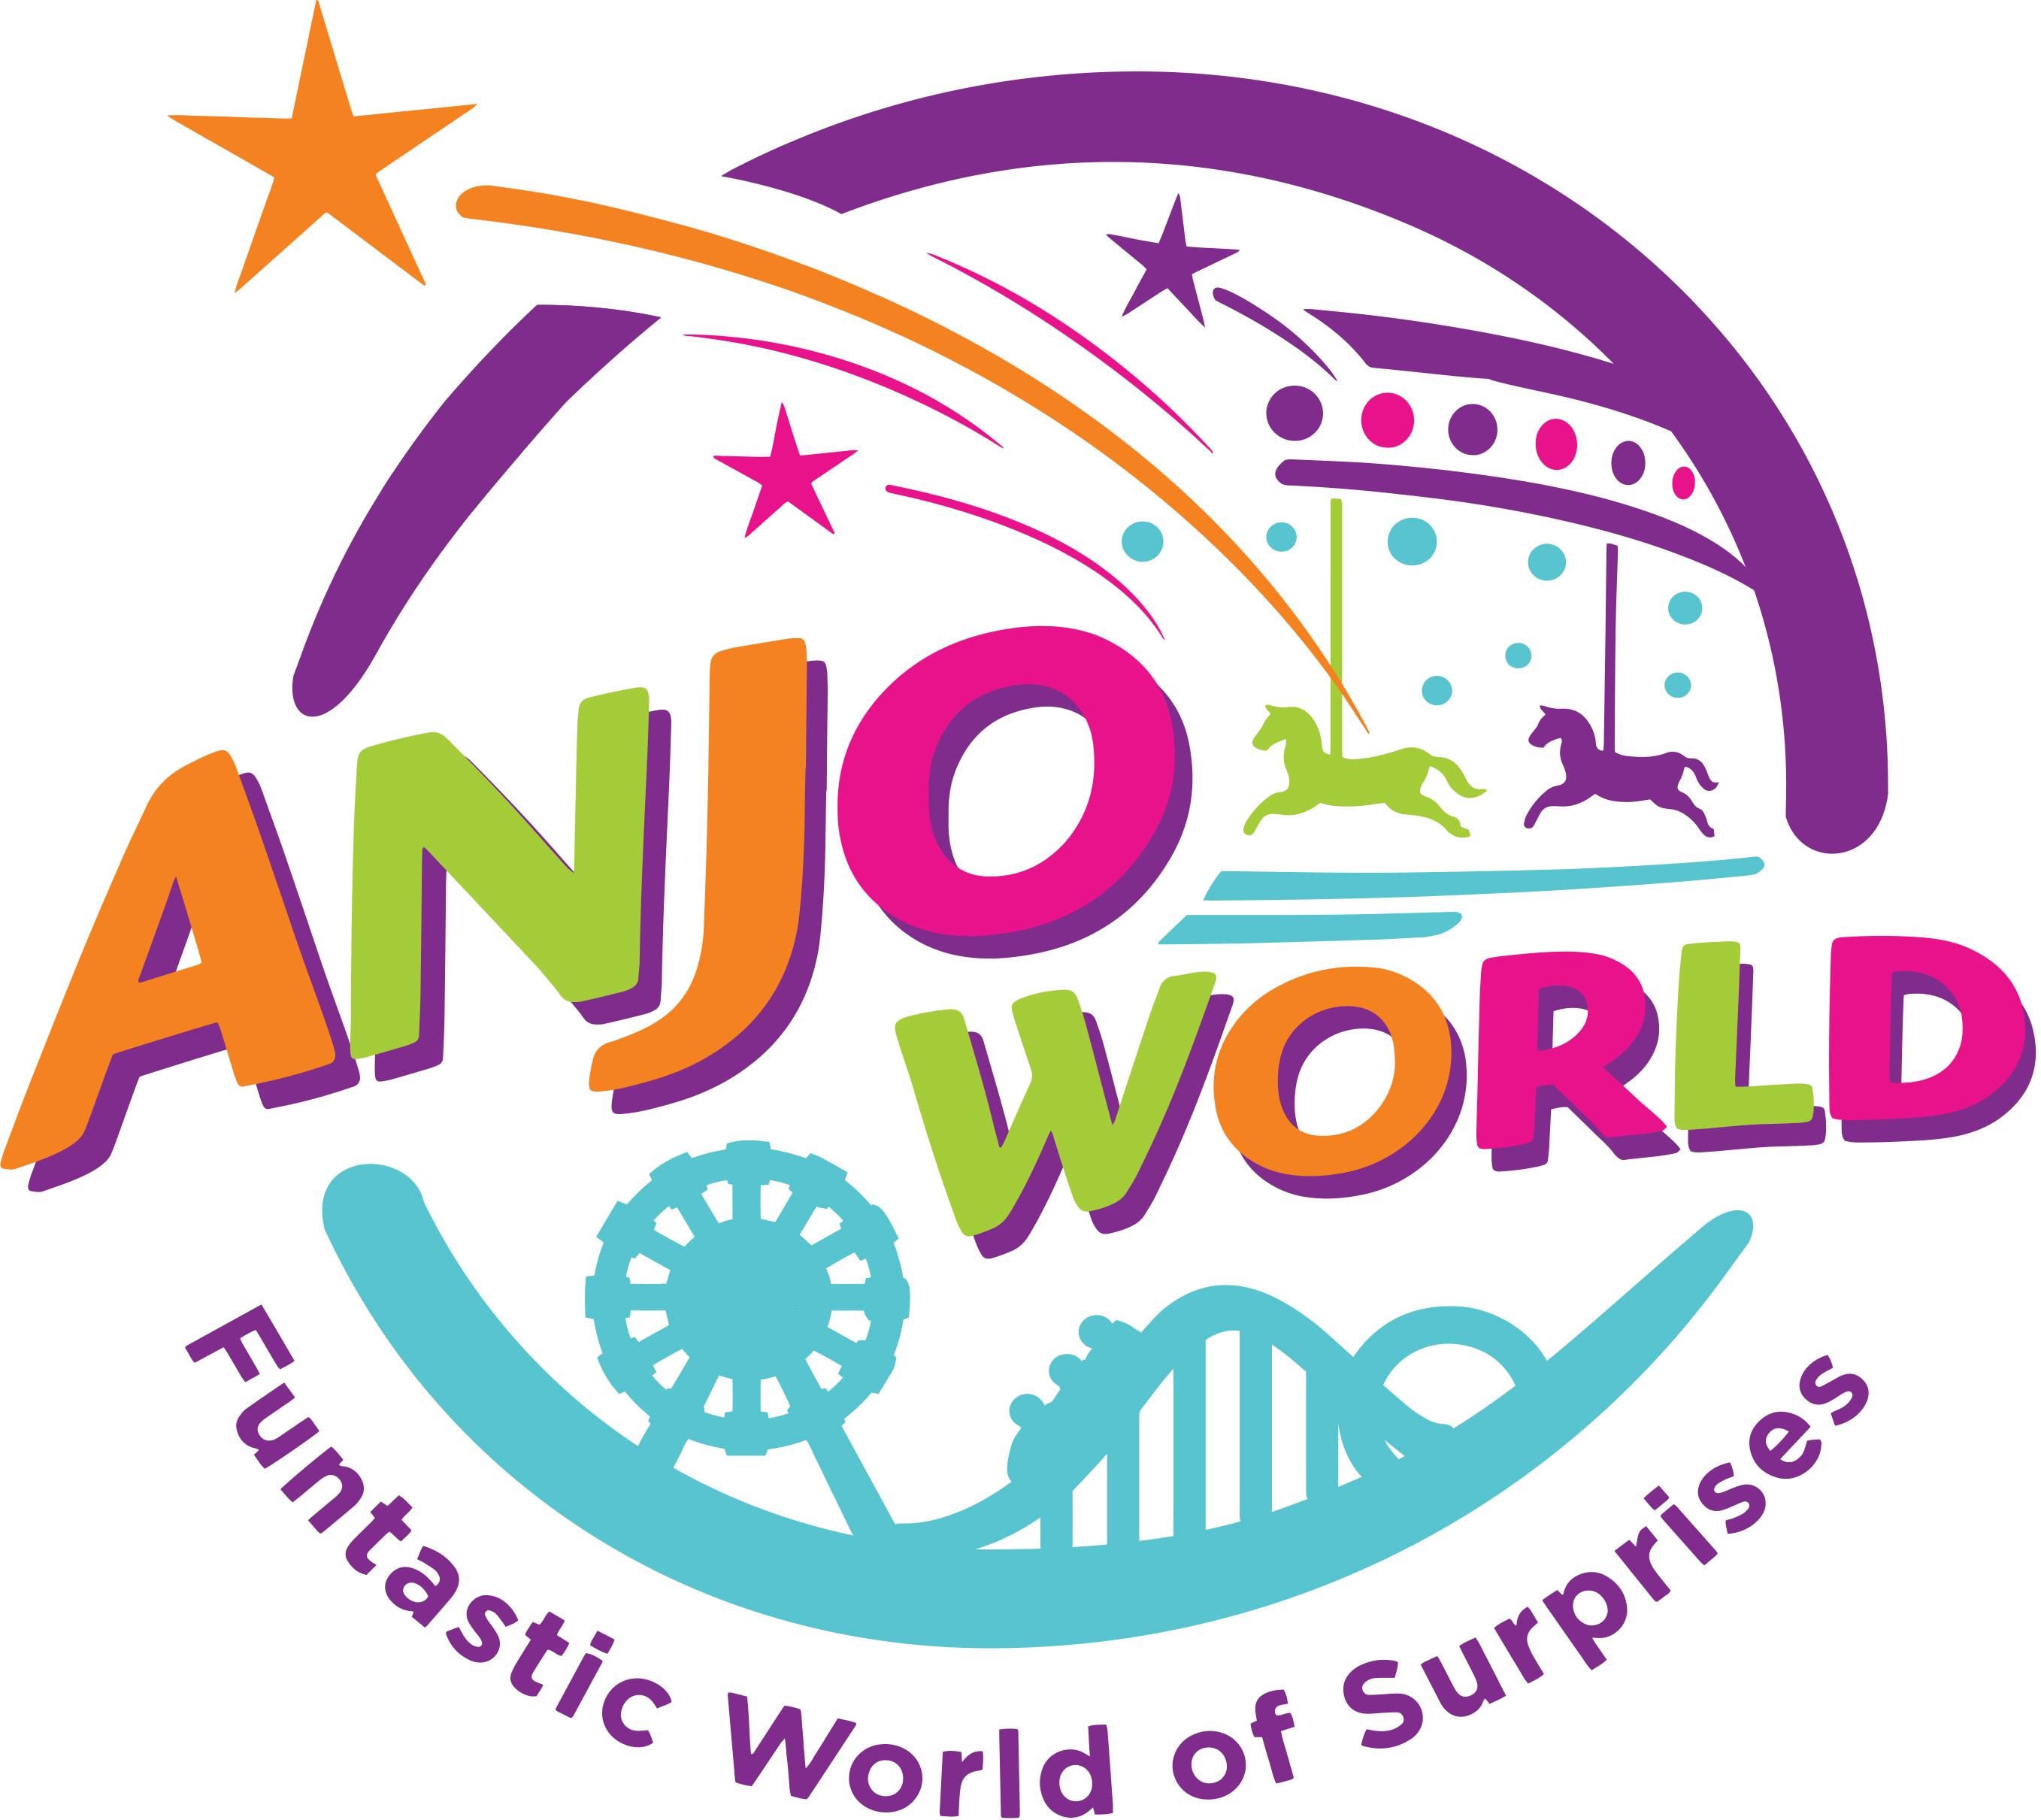 Anjo World logo